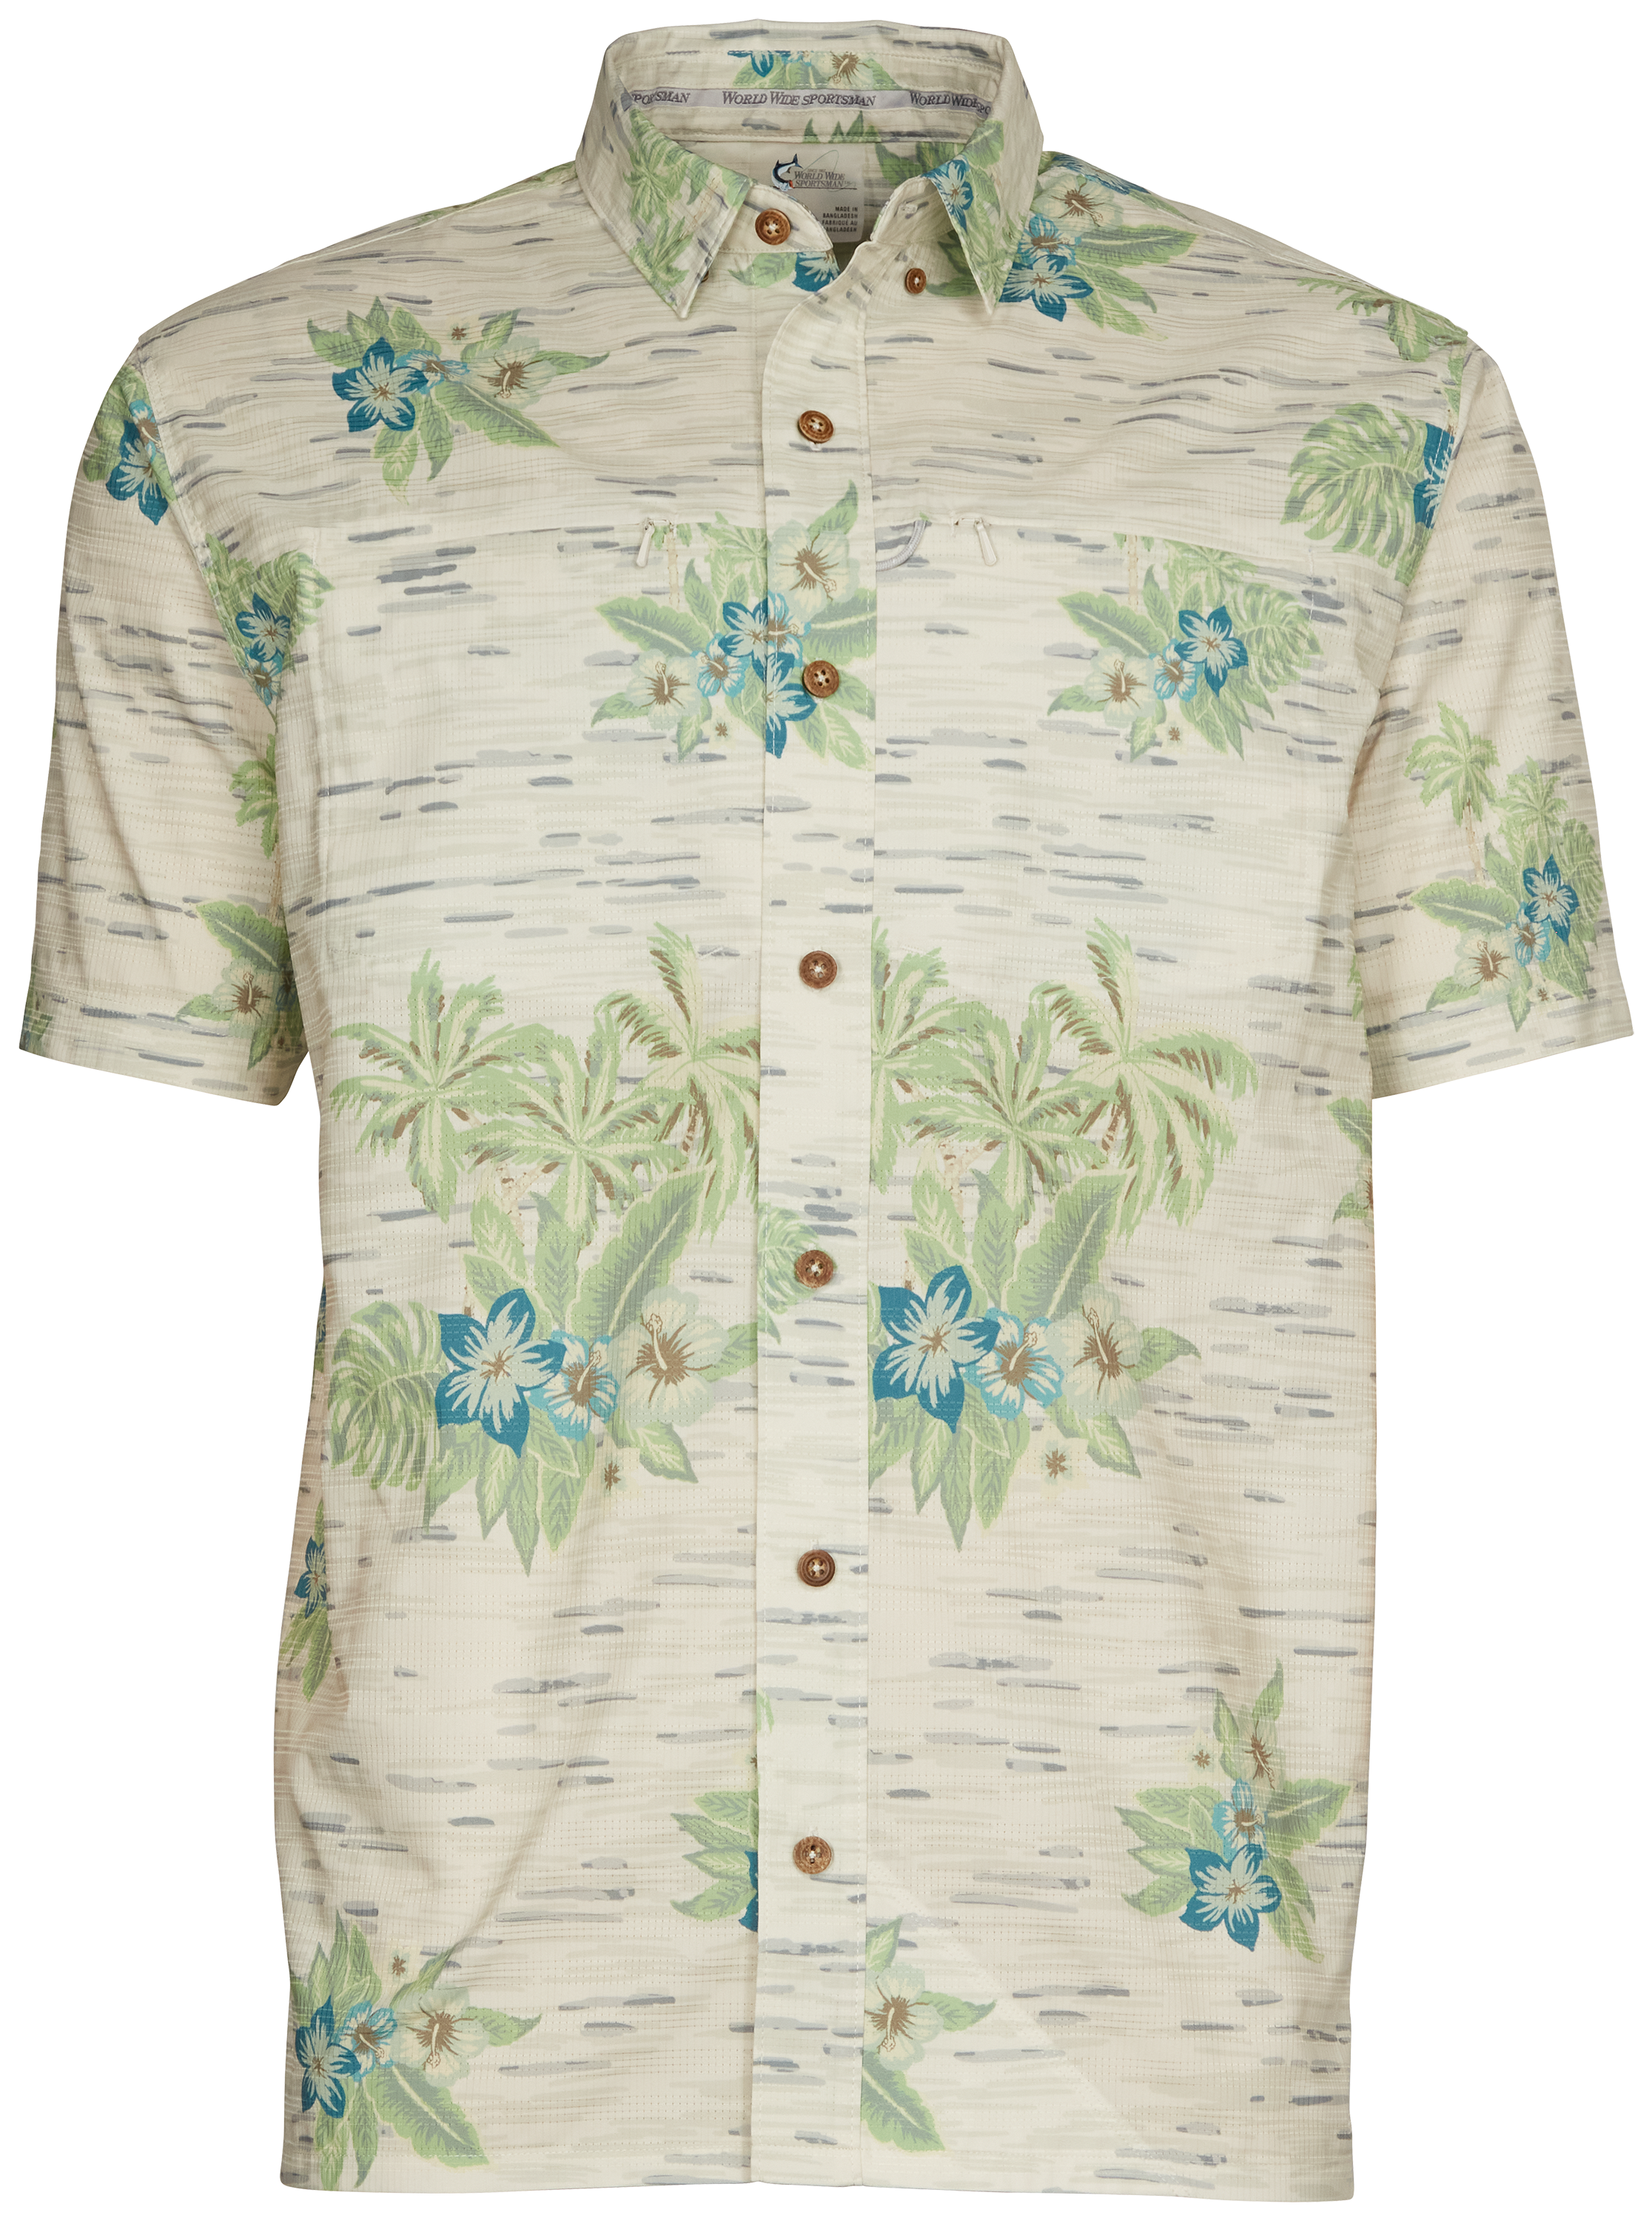 World Wide Sportsman Seacrest Print Short-Sleeve Button-Down Shirt for Men - Gray Hawaiian - L